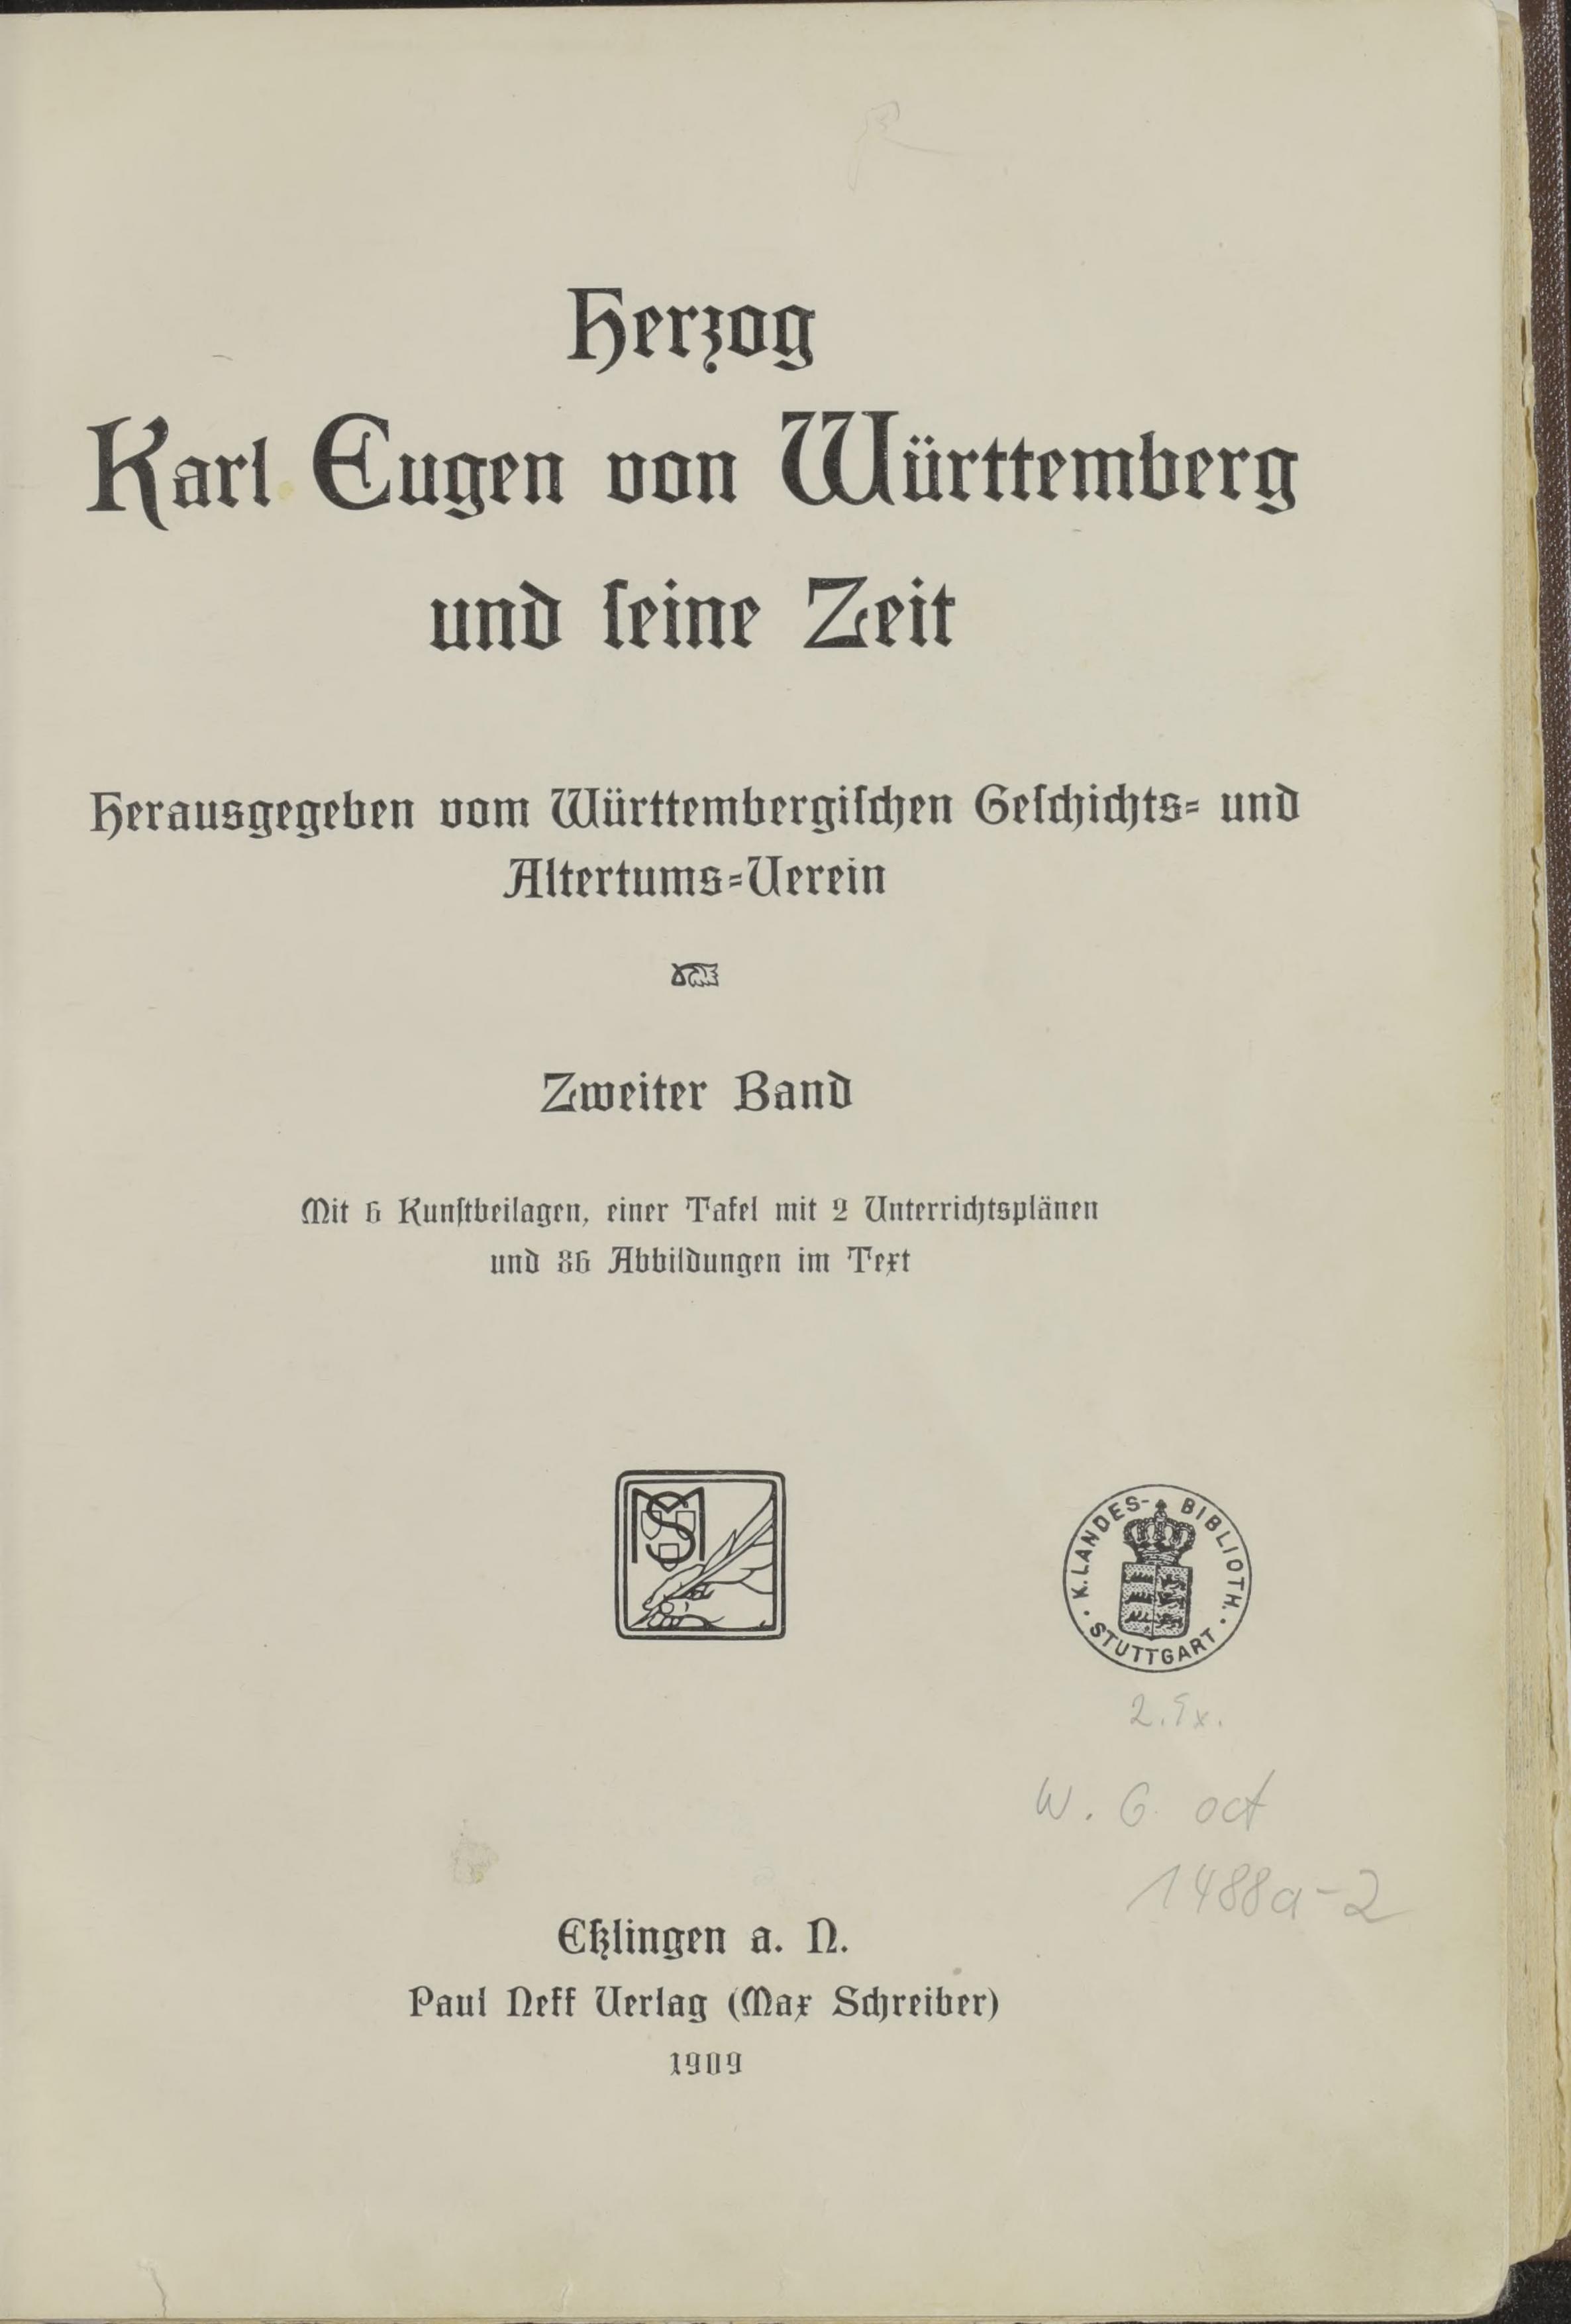 Herzog Karl Eugen und seine Zeit 2, Cover